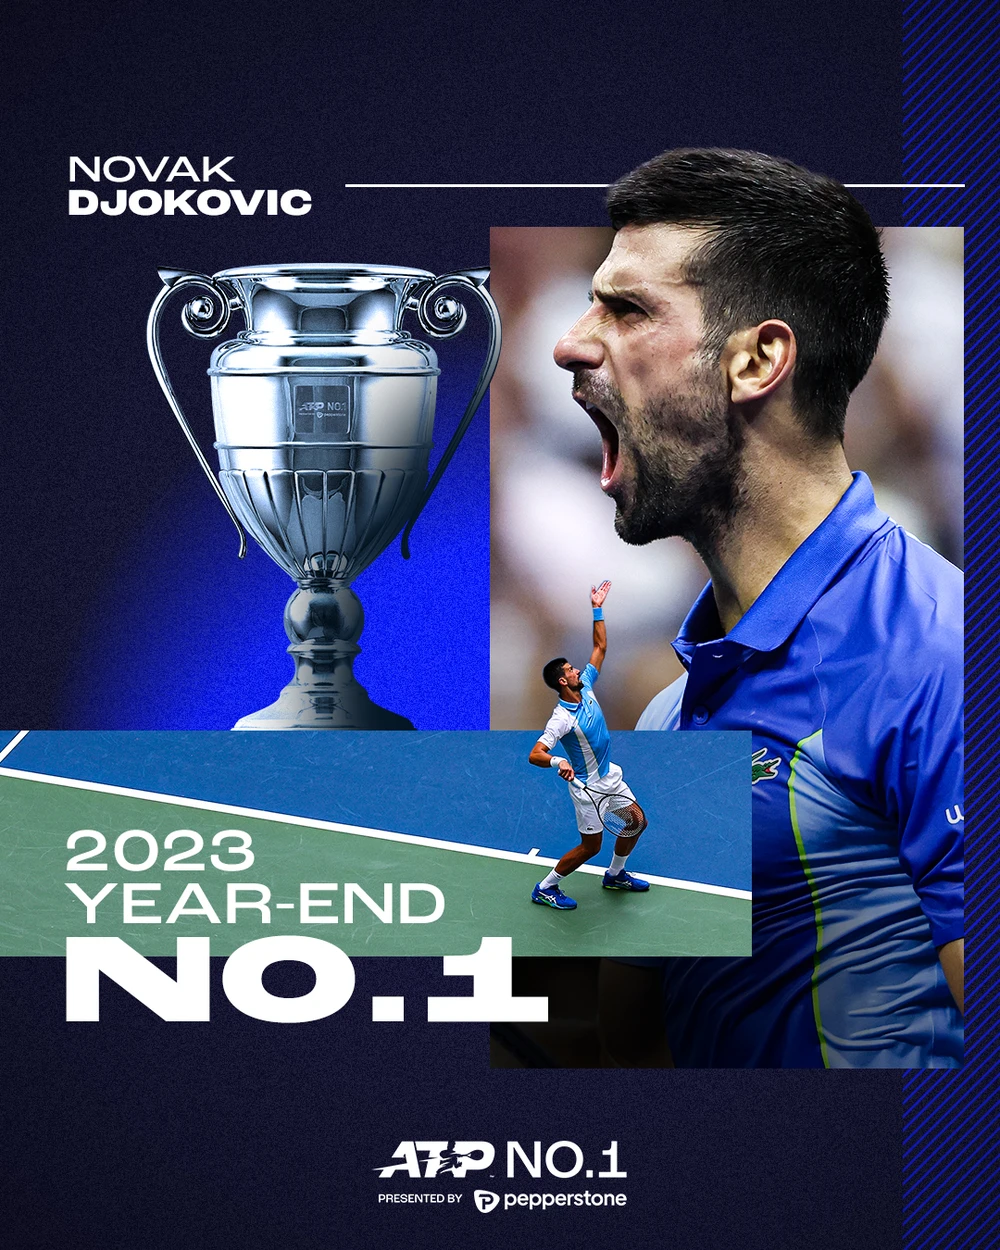 Djokovic kết thúc mùa giải 2023 với ngôi số 1